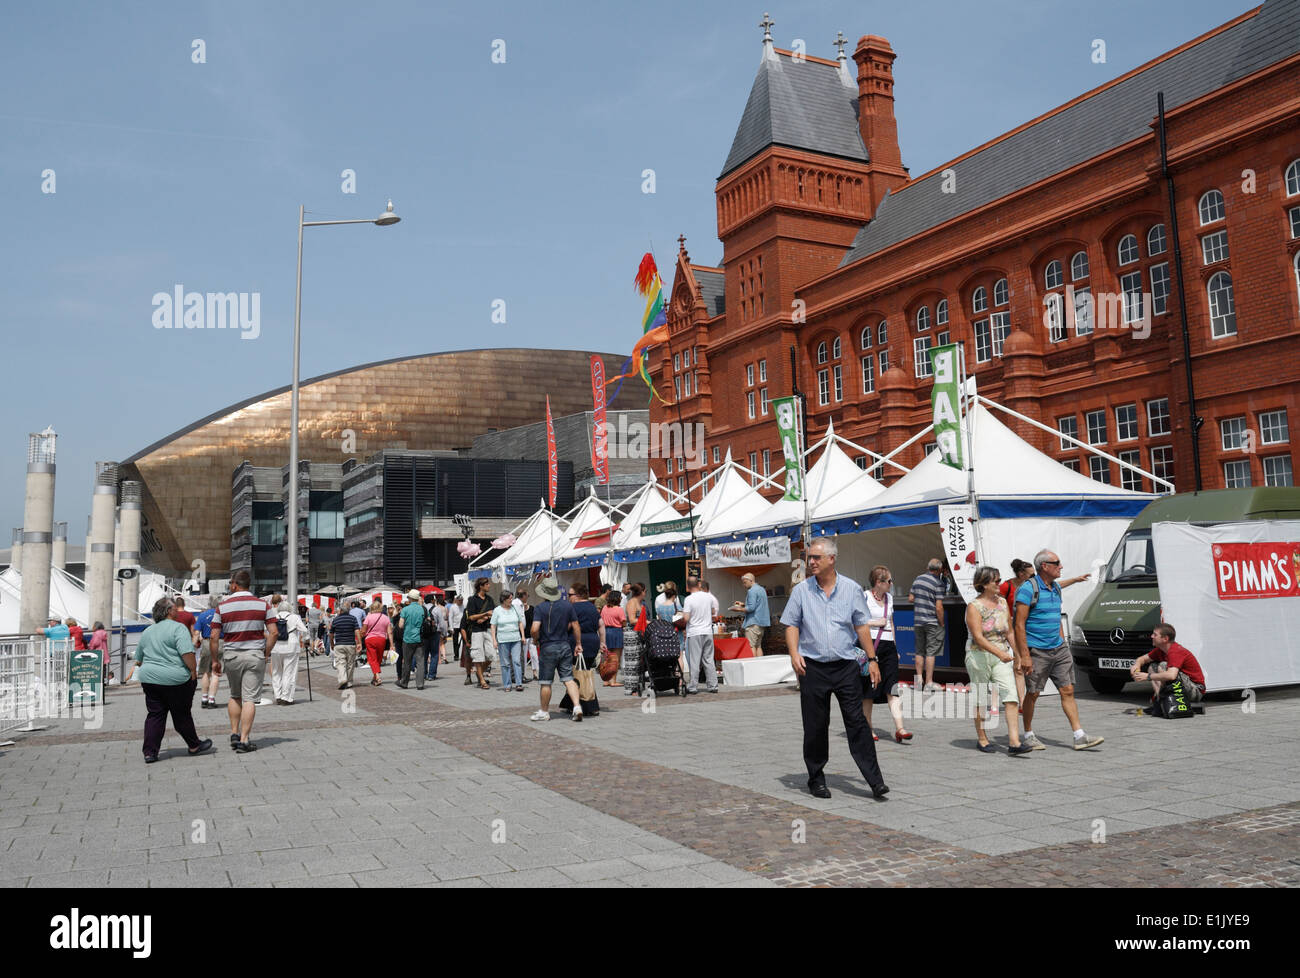 Les gens apprécient le festival de la gastronomie et des boissons de Cardiff baie de Cardiff Pays de Galles Royaume-Uni Banque D'Images